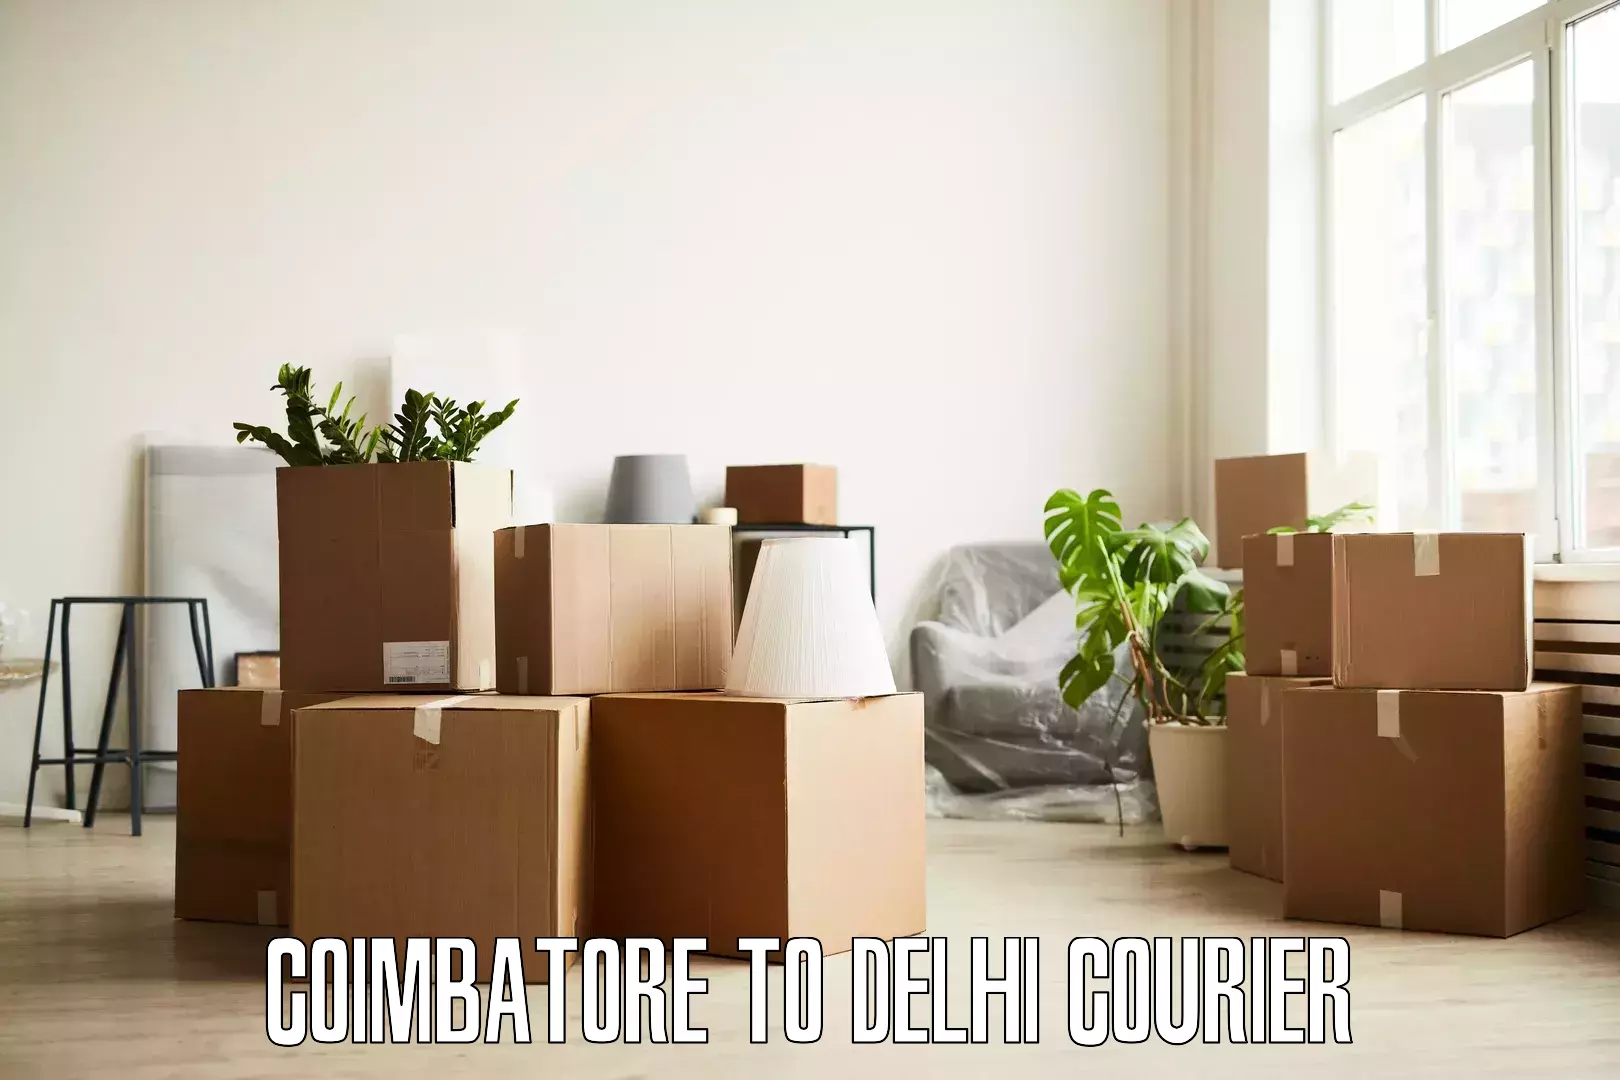 Home goods transport Coimbatore to Jawaharlal Nehru University New Delhi